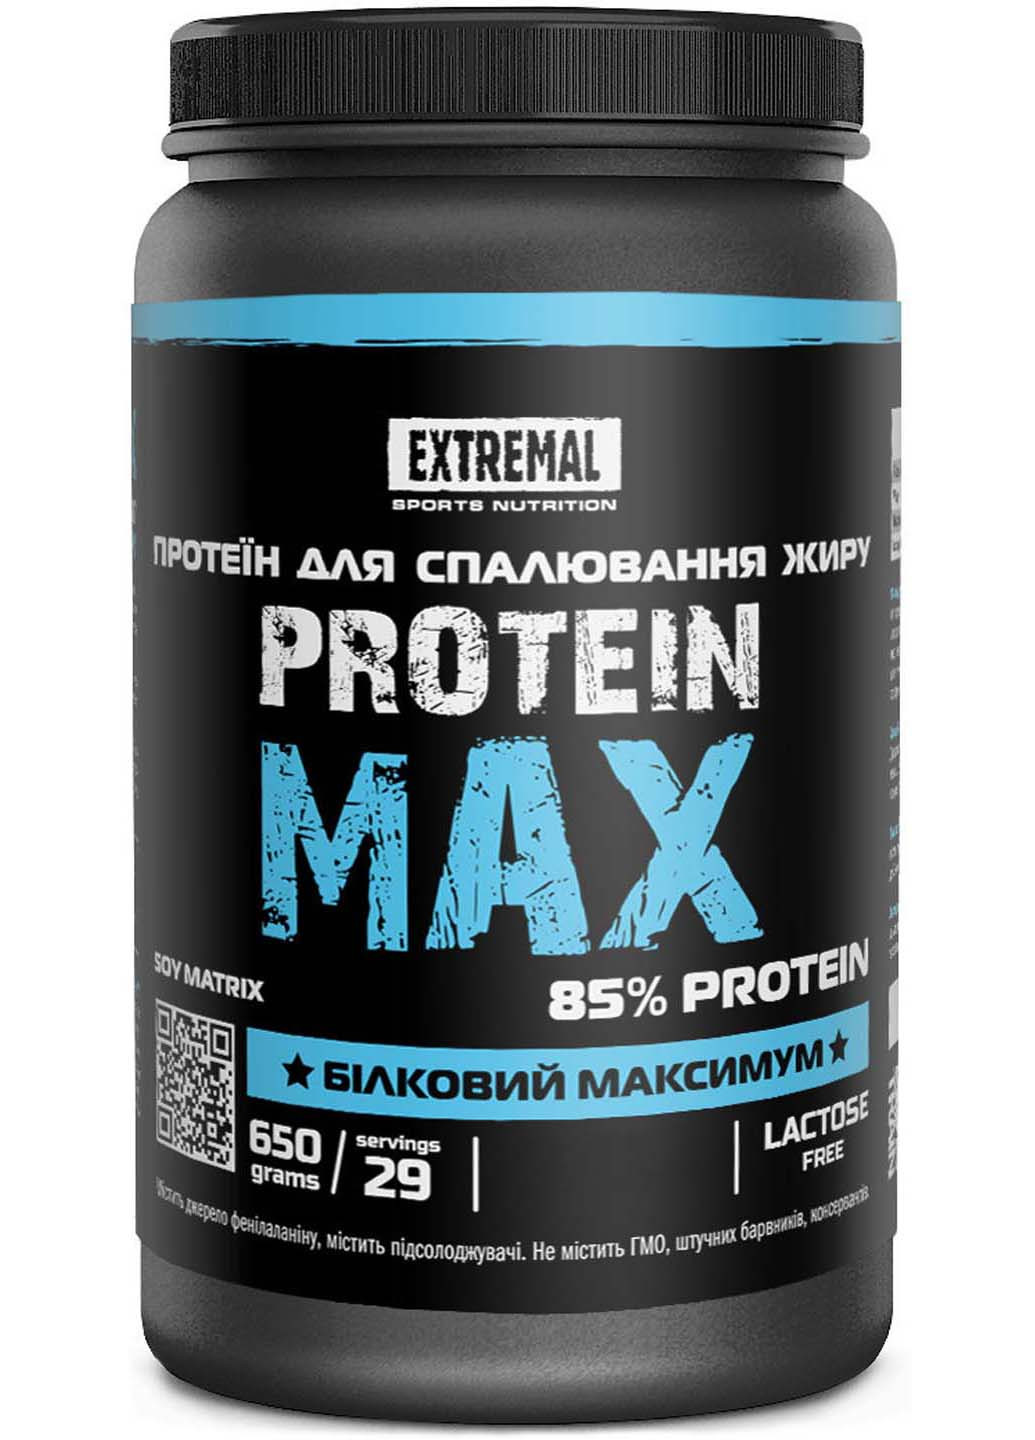 Соєвий Протеїн Ізолят для схуднення 650 г тірамісу десерт Protein max для спалювання жиру Extremal (254070174)